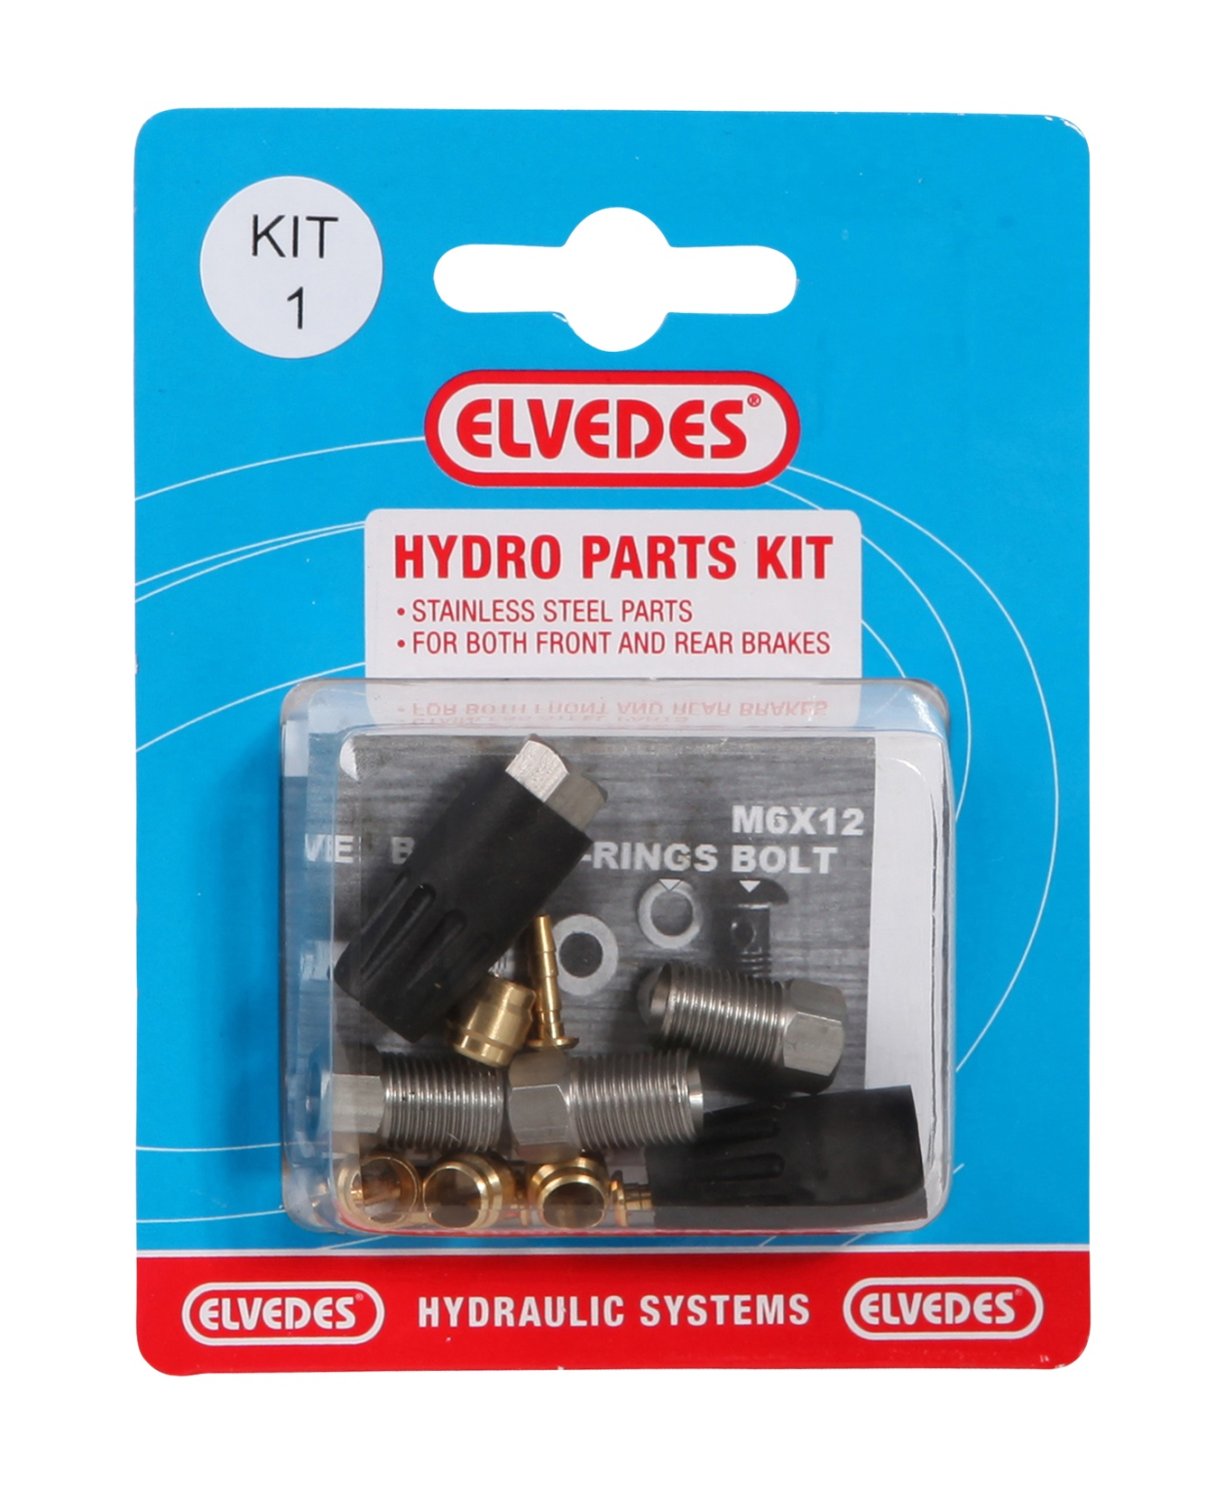 Велосипедный набор для гидролинии ELVEDES Kit 1 (М8 + М8), для переднего и заднего тормозов , для Shimano, 2011012 велосипедный фиксирующий штифт elvedes 45 мм для hayes hope 2017180